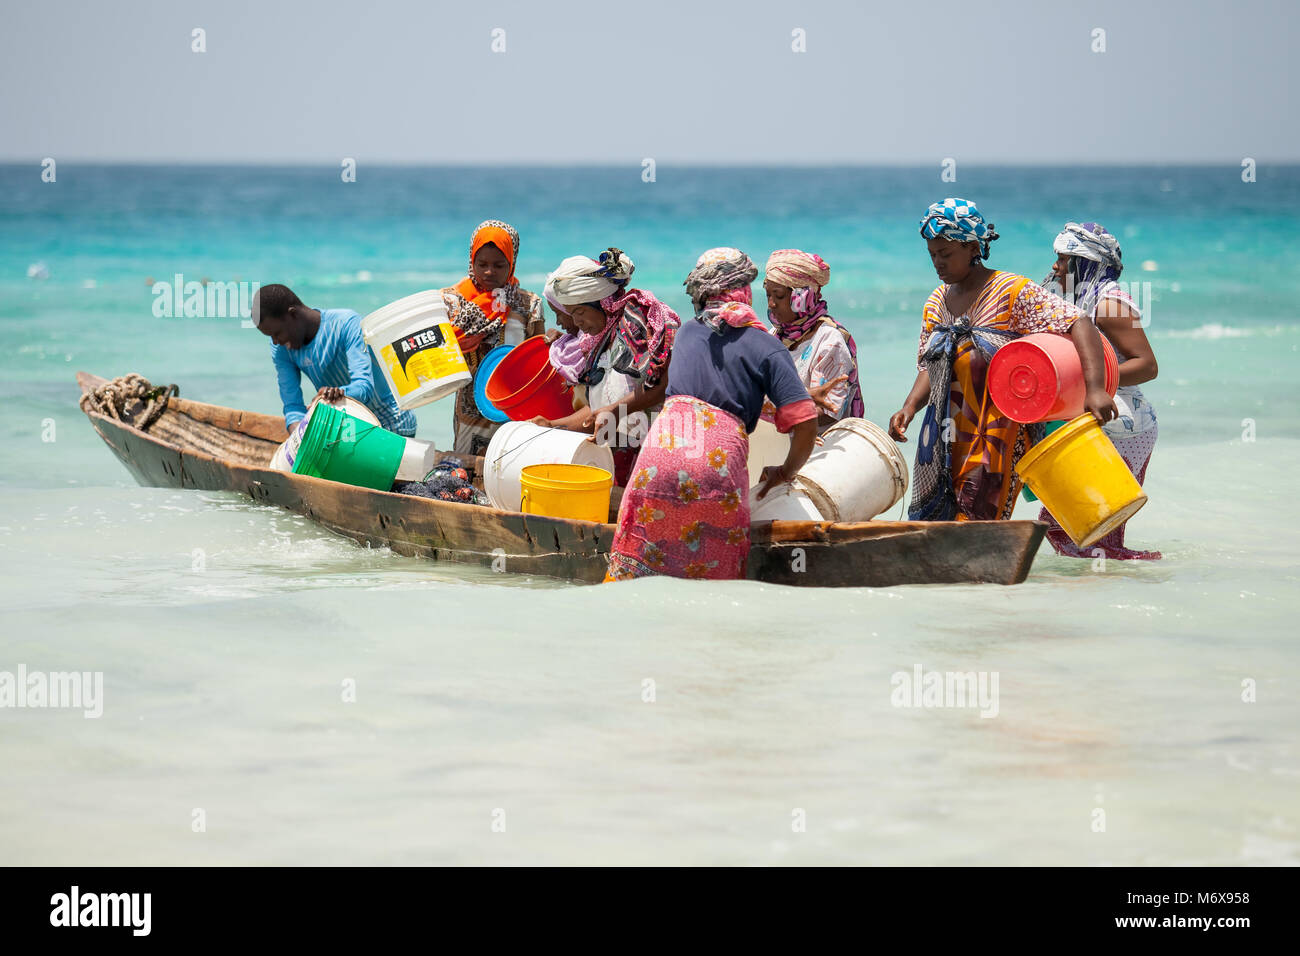 Stone Town, die Insel Sansibar, Tansania, 28.05.2015. Frauen sammeln kleine Fische in einem Boot an der Küste von Stone Town, die Insel Sansibar, Tansania. Stockfoto